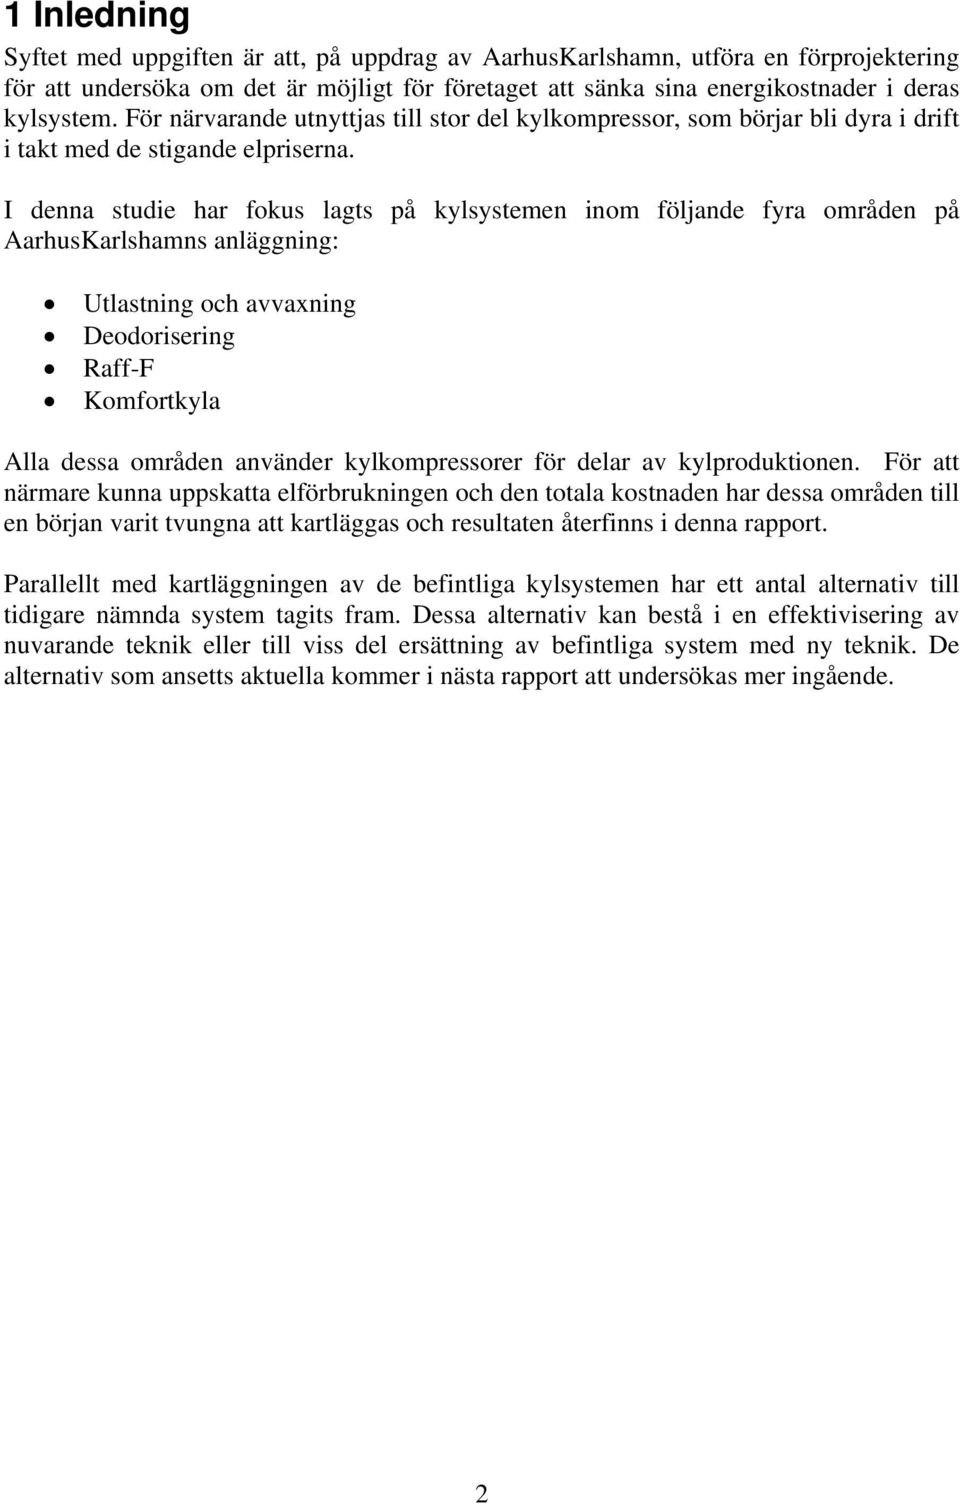 I denna studie har fokus lagts på kylsystemen inom följande fyra områden på AarhusKarlshamns anläggning: Utlastning och avvaxning Deodorisering Raff-F Komfortkyla Alla dessa områden använder